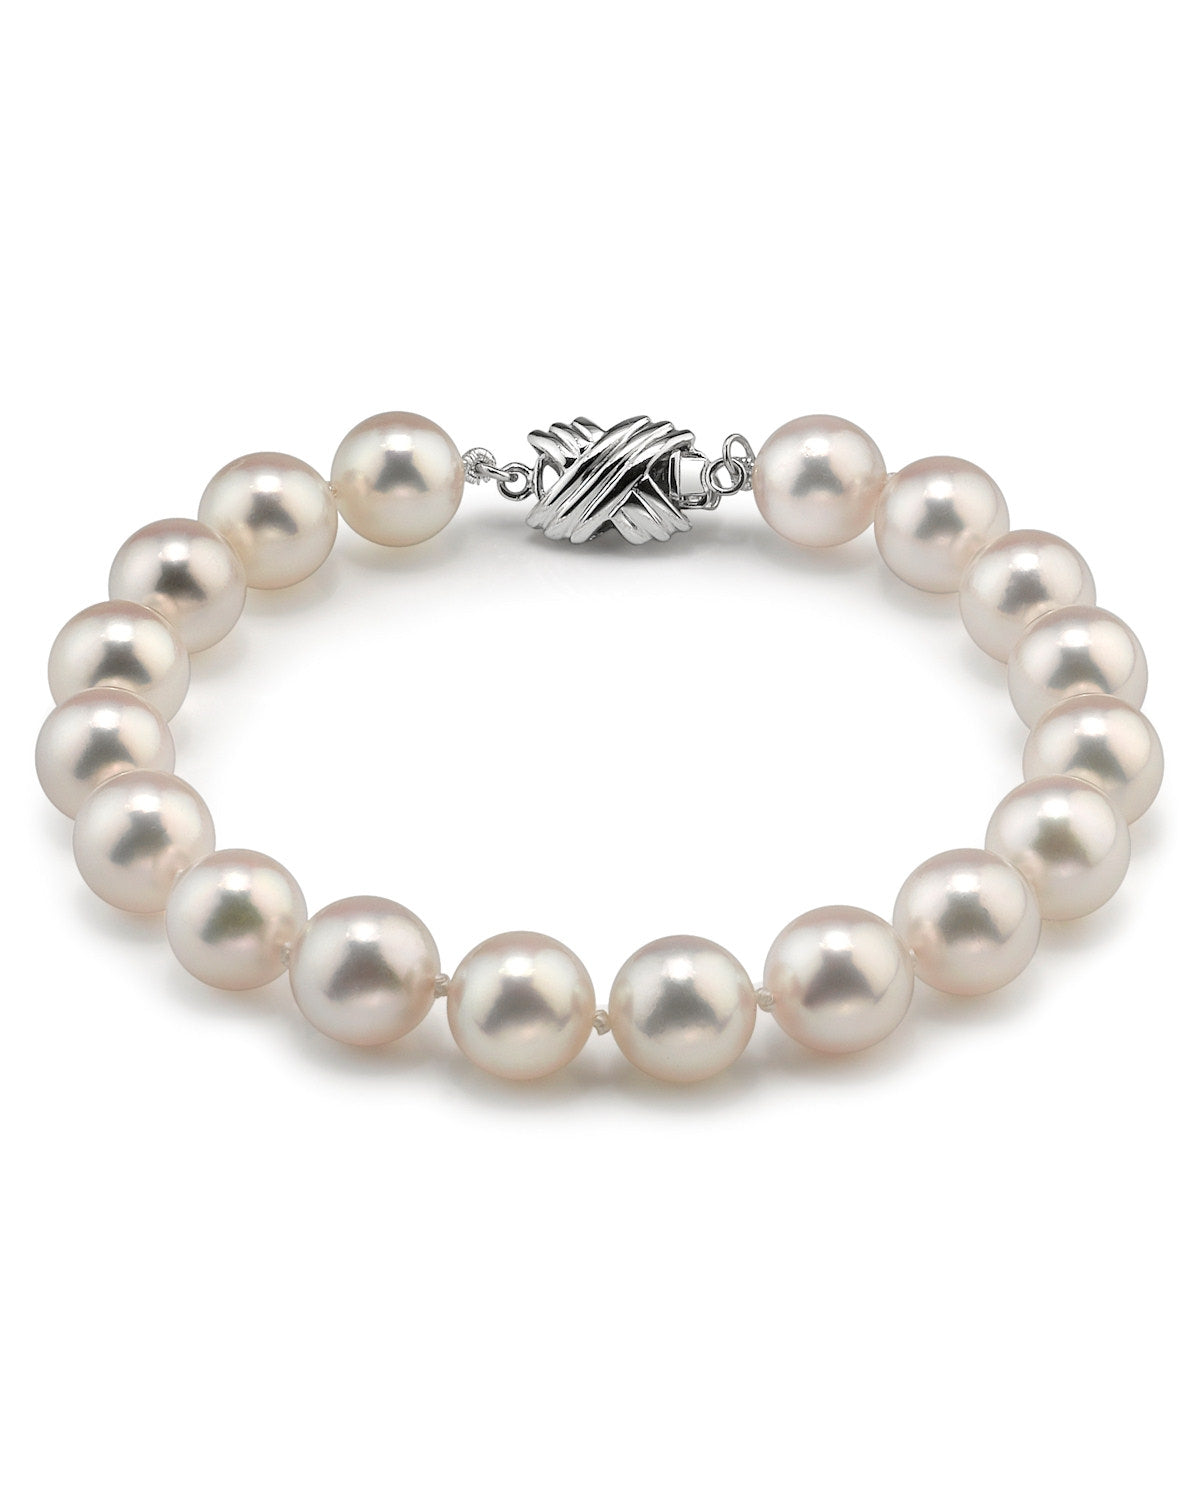 Types of Pearls | Pearls.jp